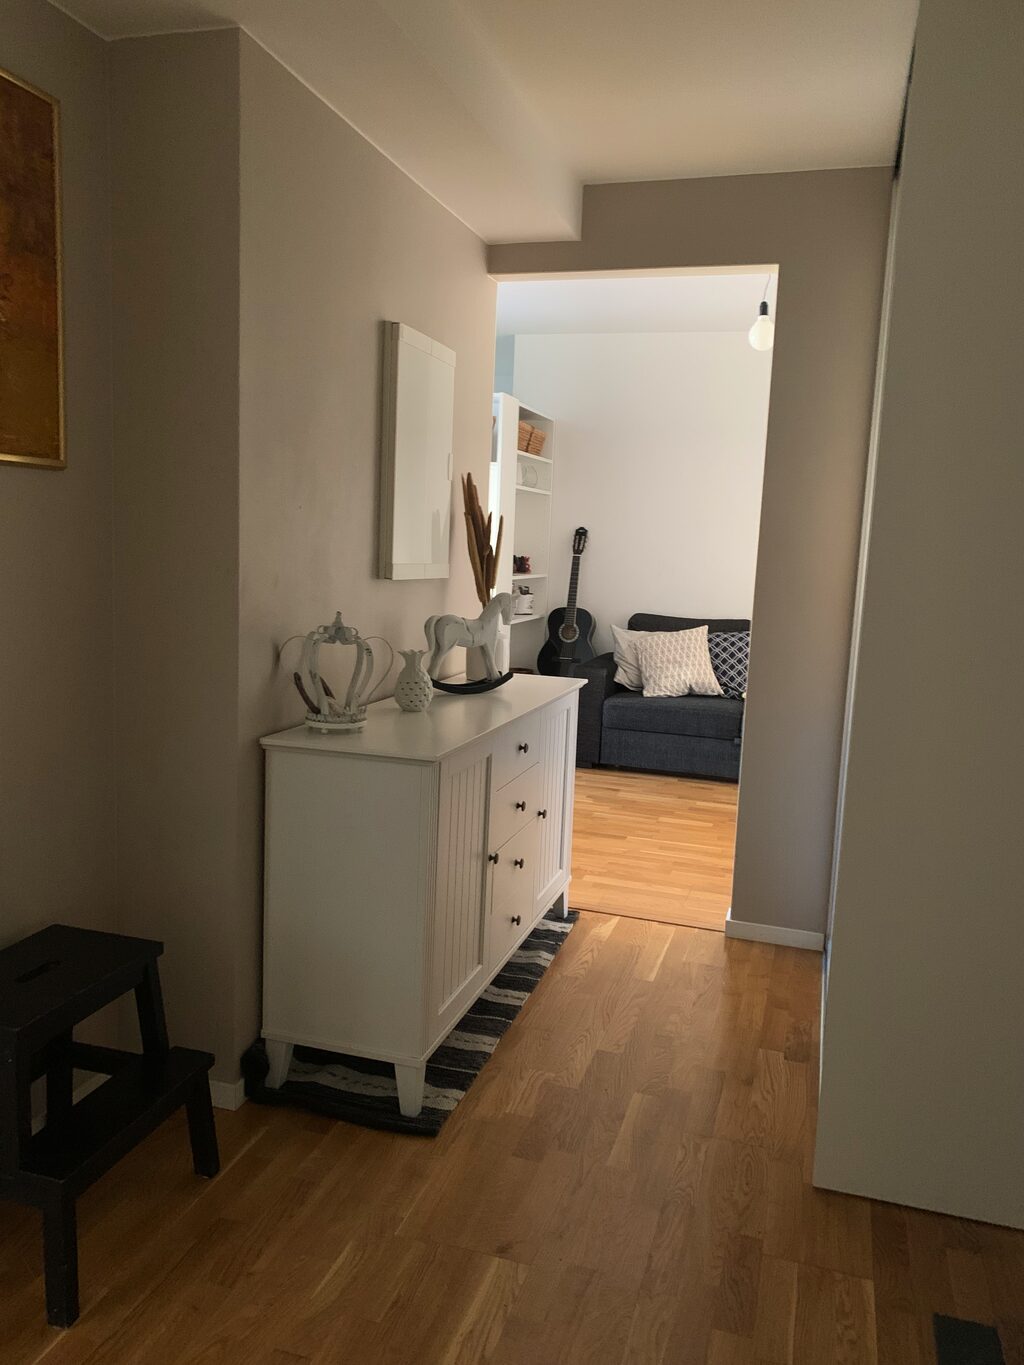 Lägenhetsbyte - Lina Sandells plan 1, 129 53 Hägersten